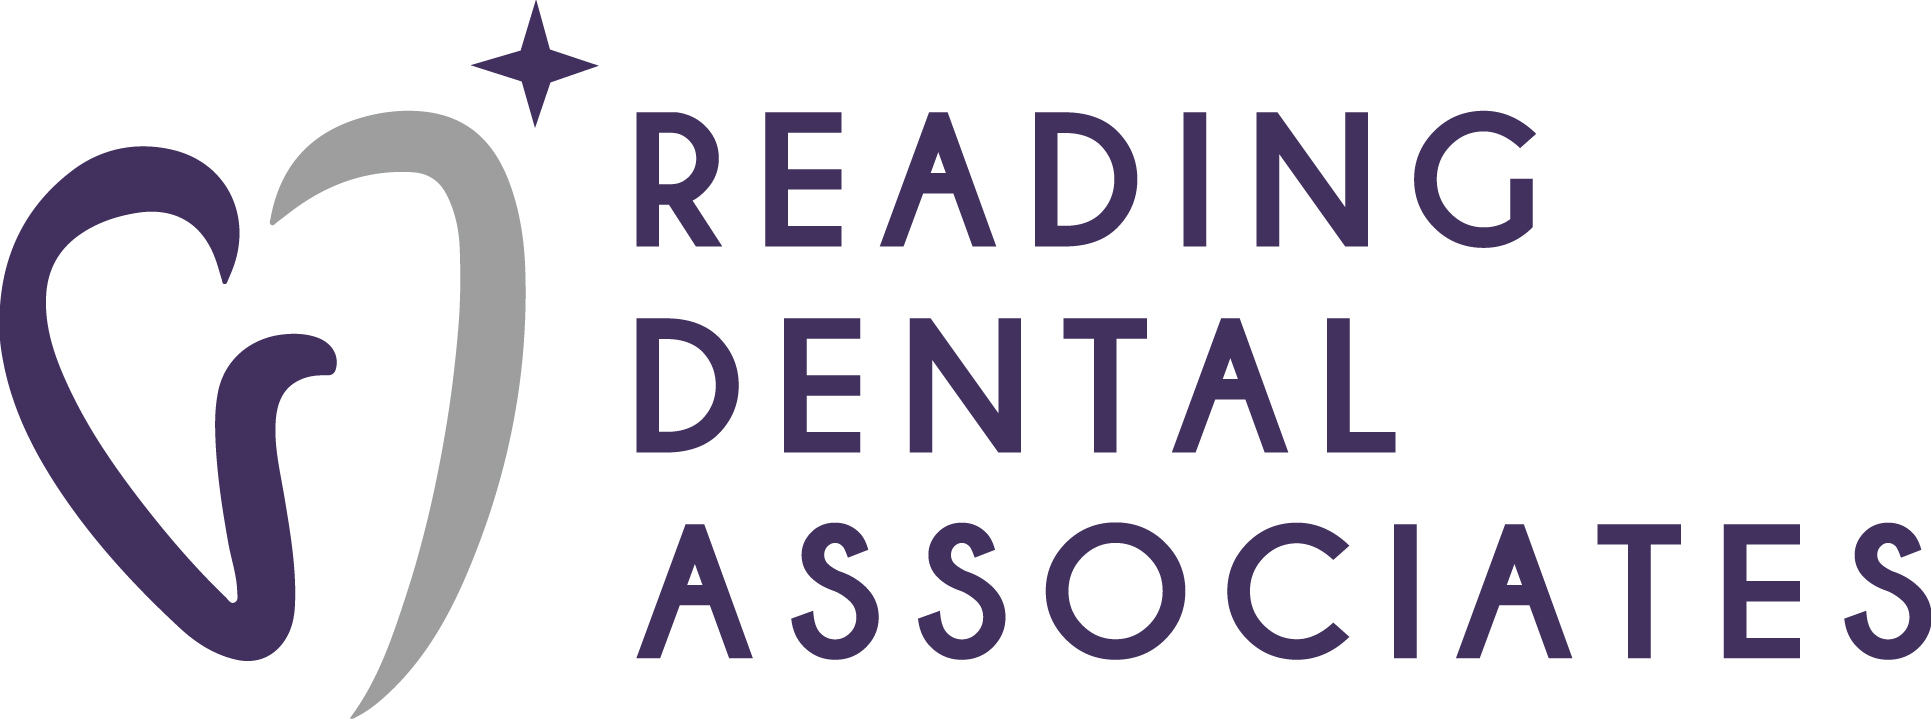 Reading-Dental-Associates-Logo.jpg